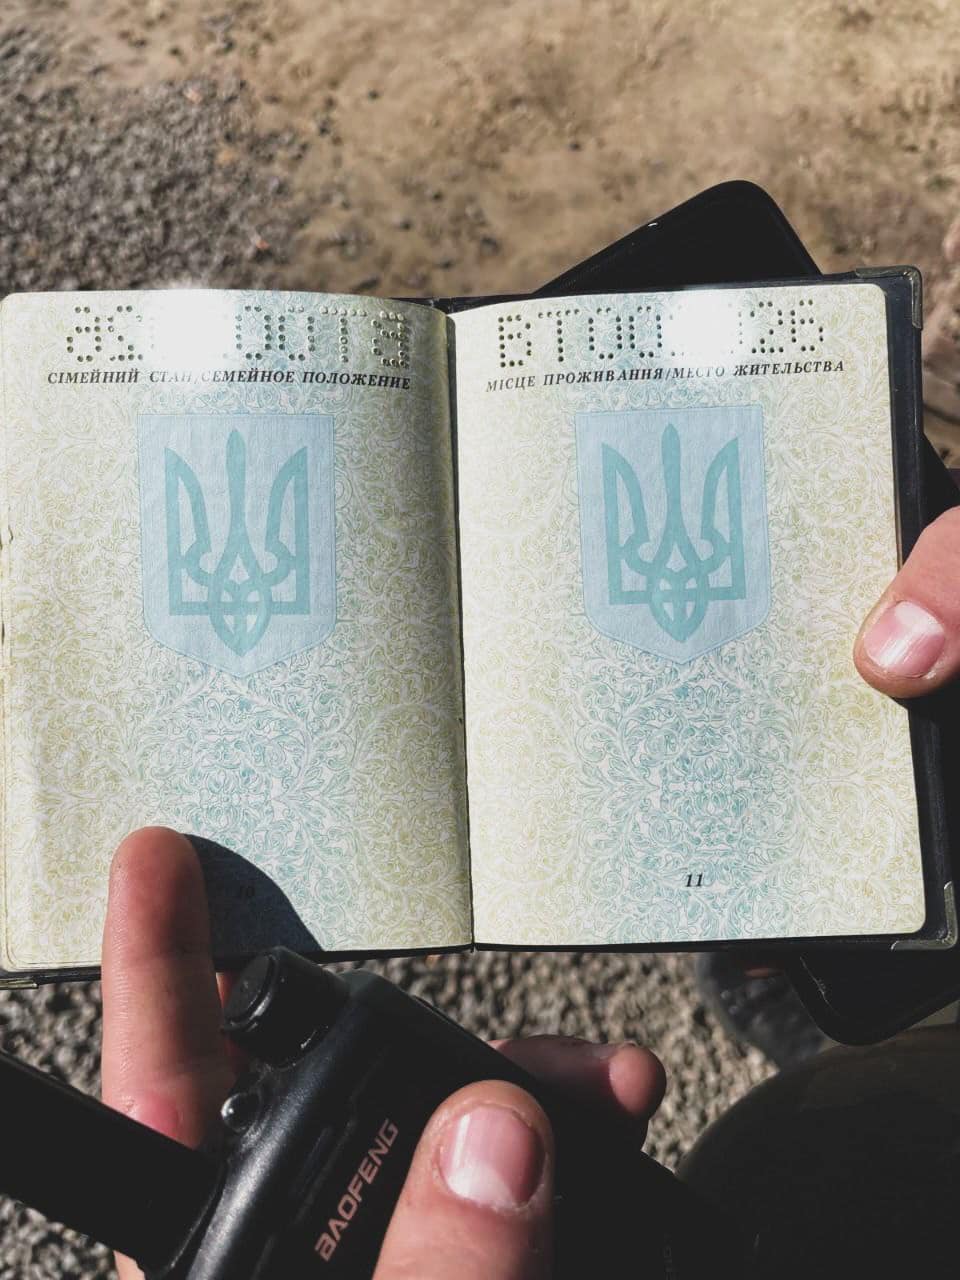 У Кропивницькому затримали чоловiка з фальшивим паспортом